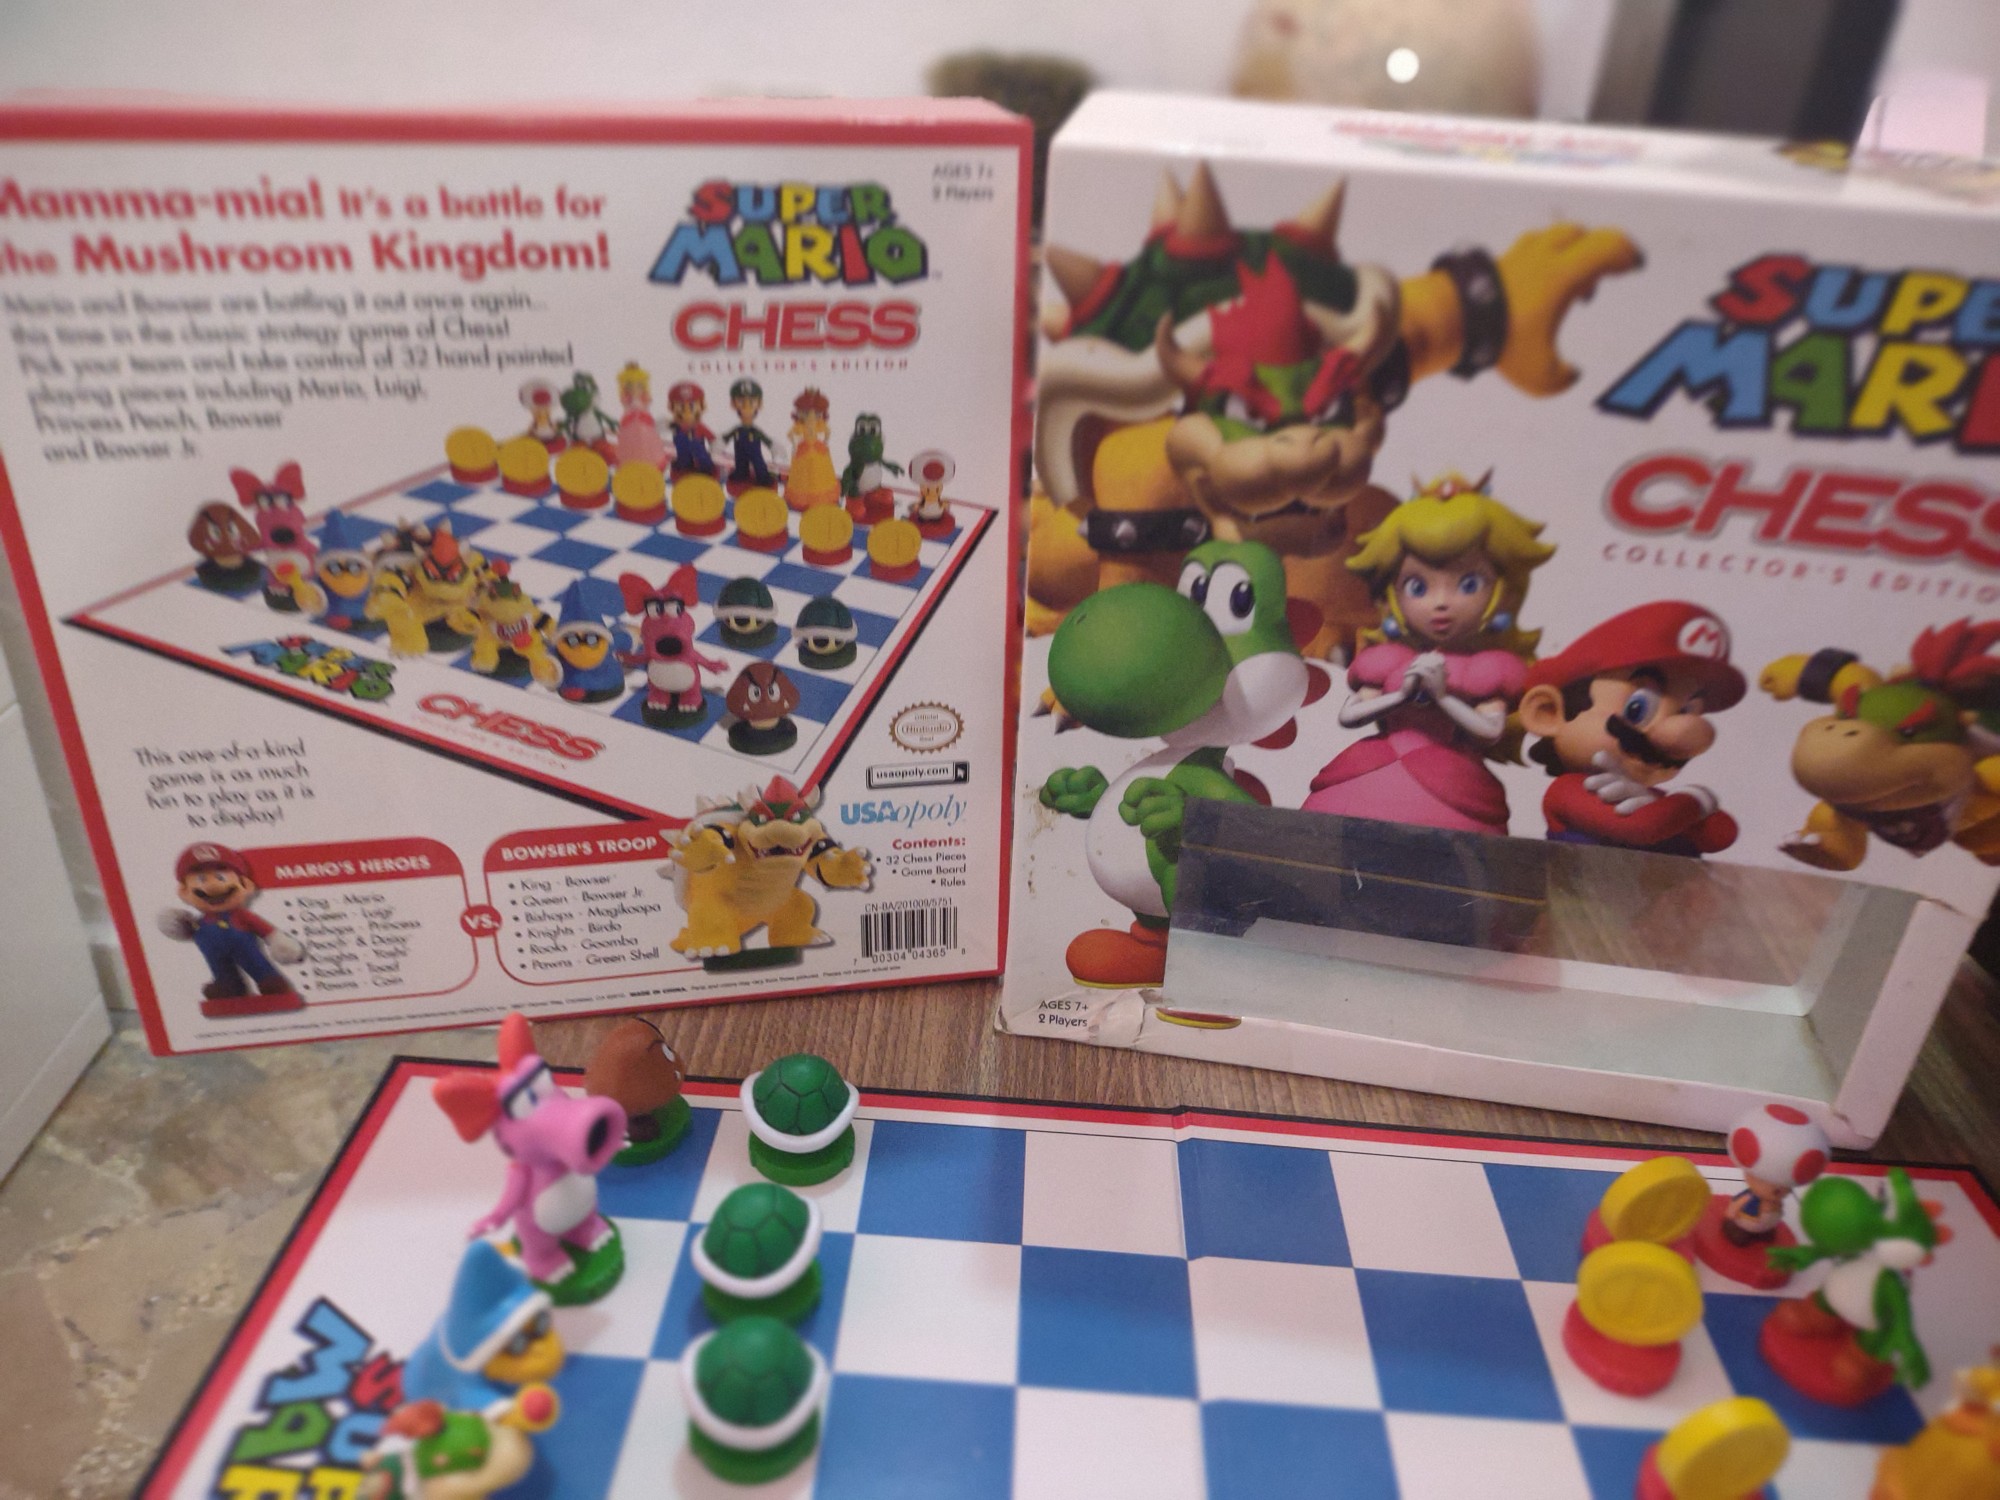 consolas y videojuegos - Ajedres edición limitada Mario bros